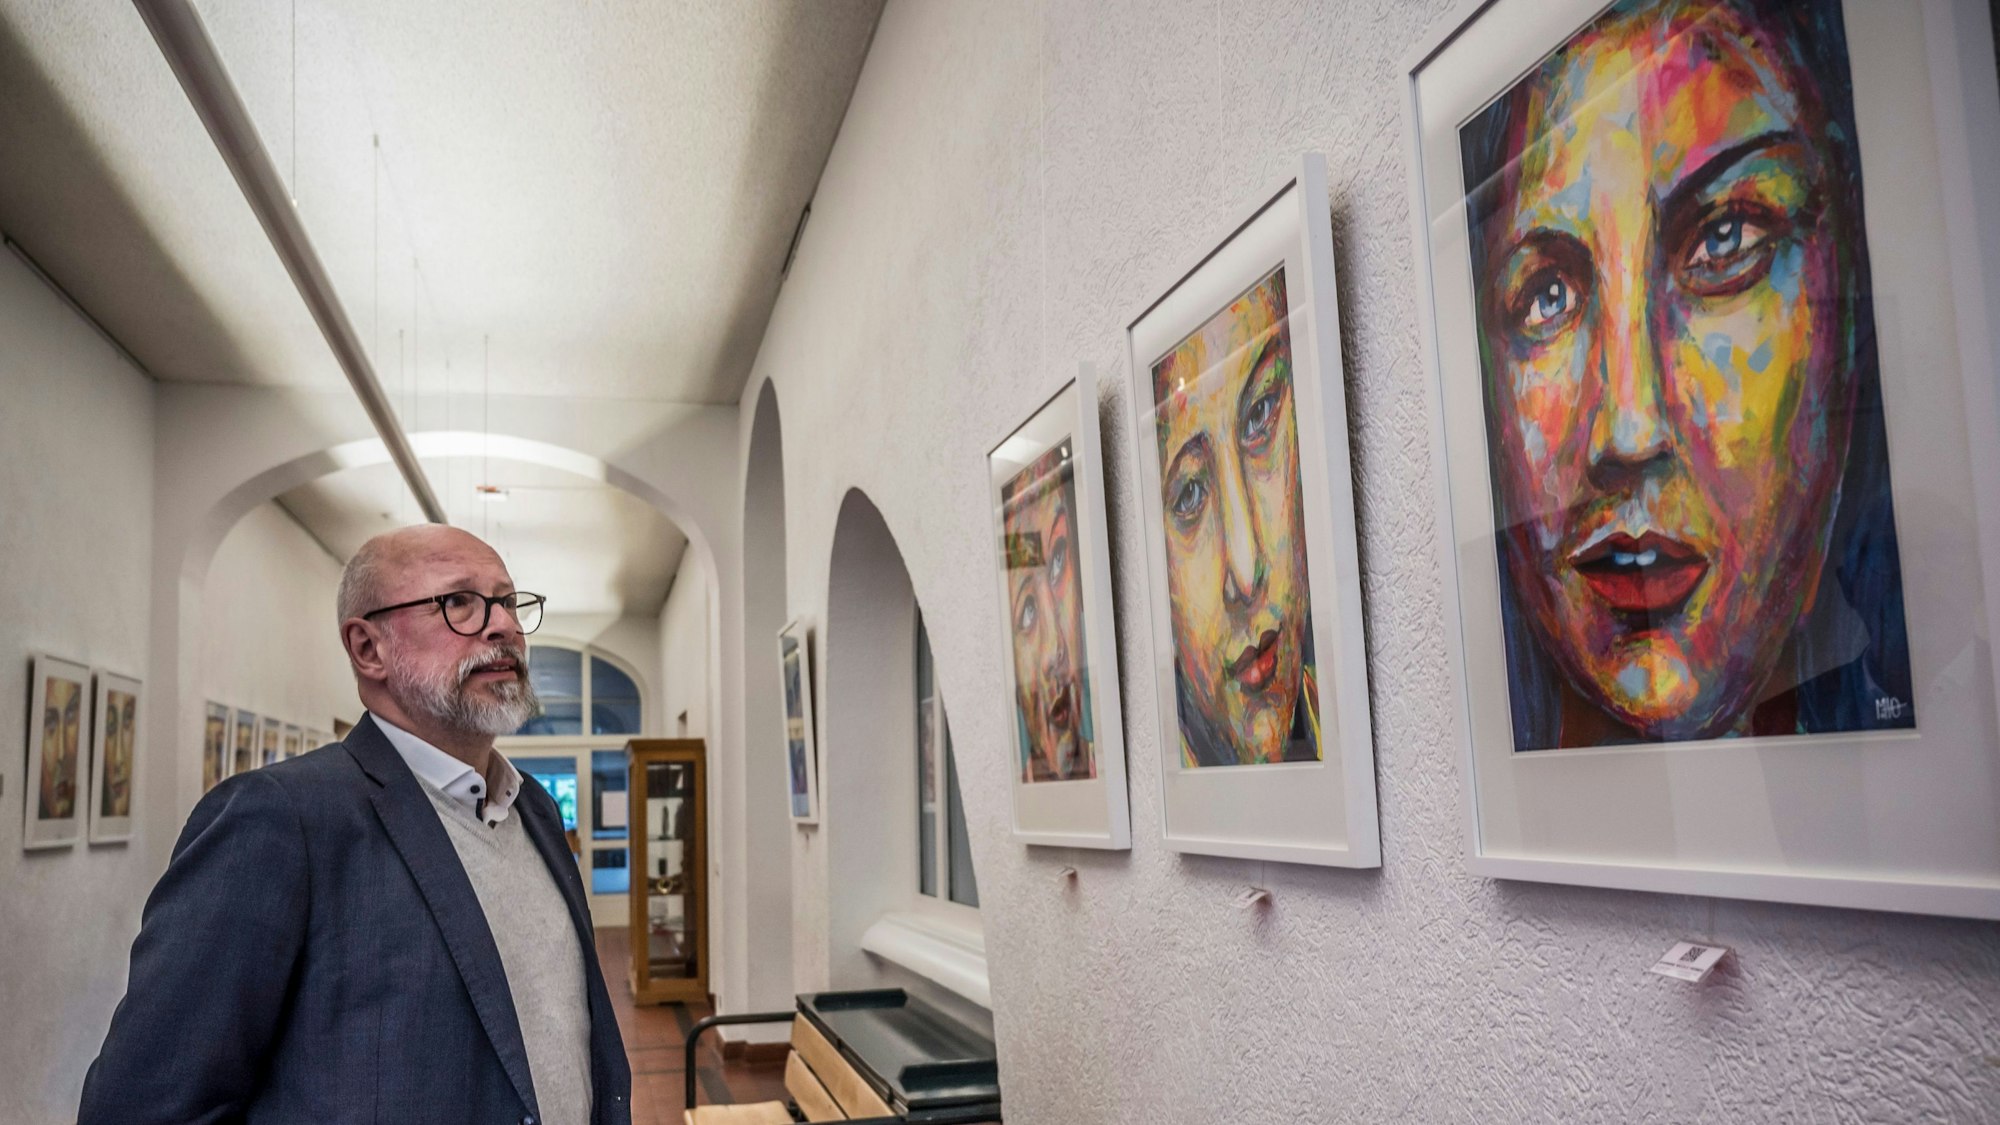 meinolf Otto und seiner Ausstellung seiner Porträtserie im Flur der Musikschule Leverkusen.